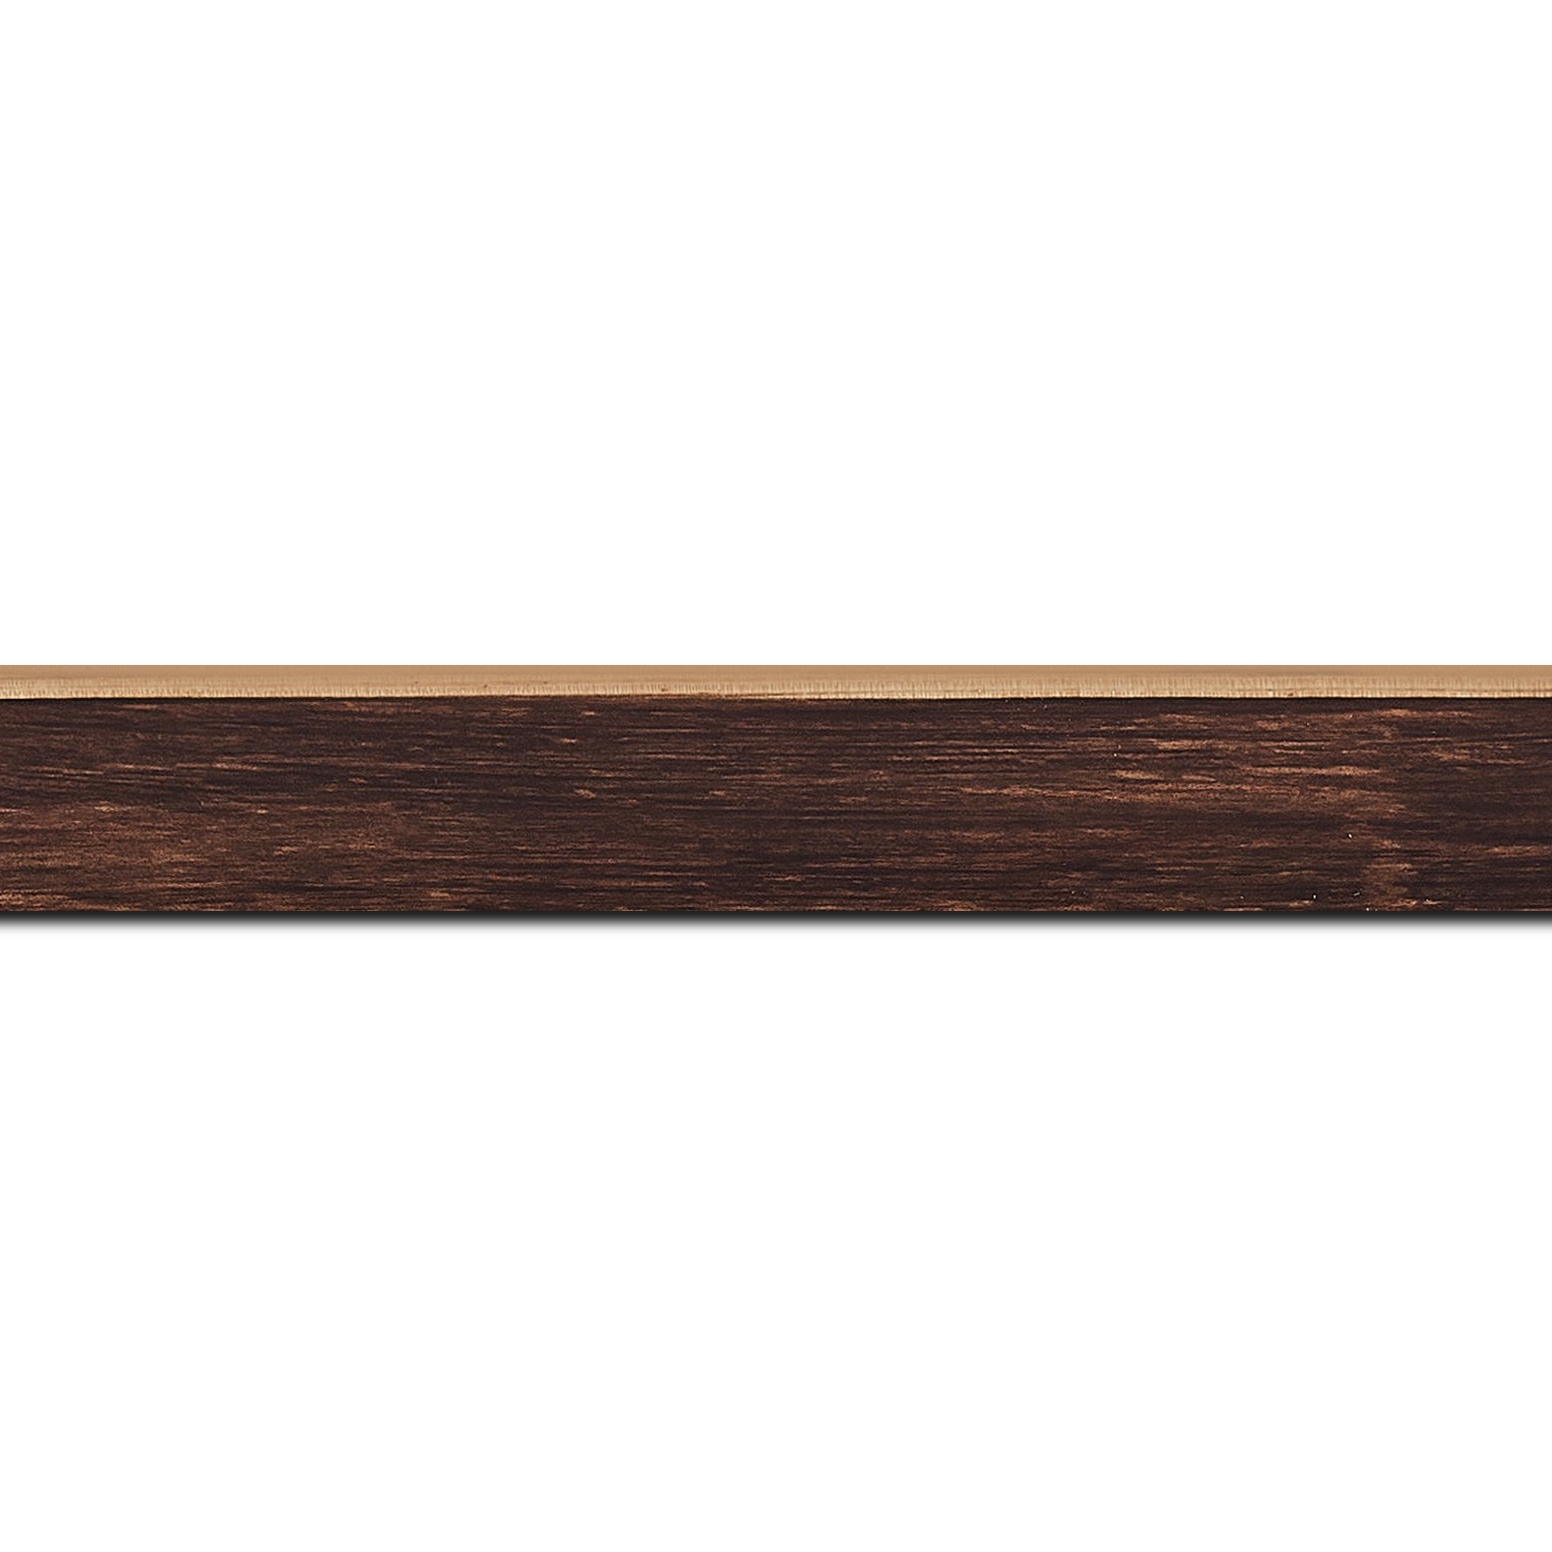 Baguette longueur 1.40m bois profil arrondi en pente plongeant largeur 2.4cm couleur marron effet ressuyé, angle du cadre extérieur filet naturel